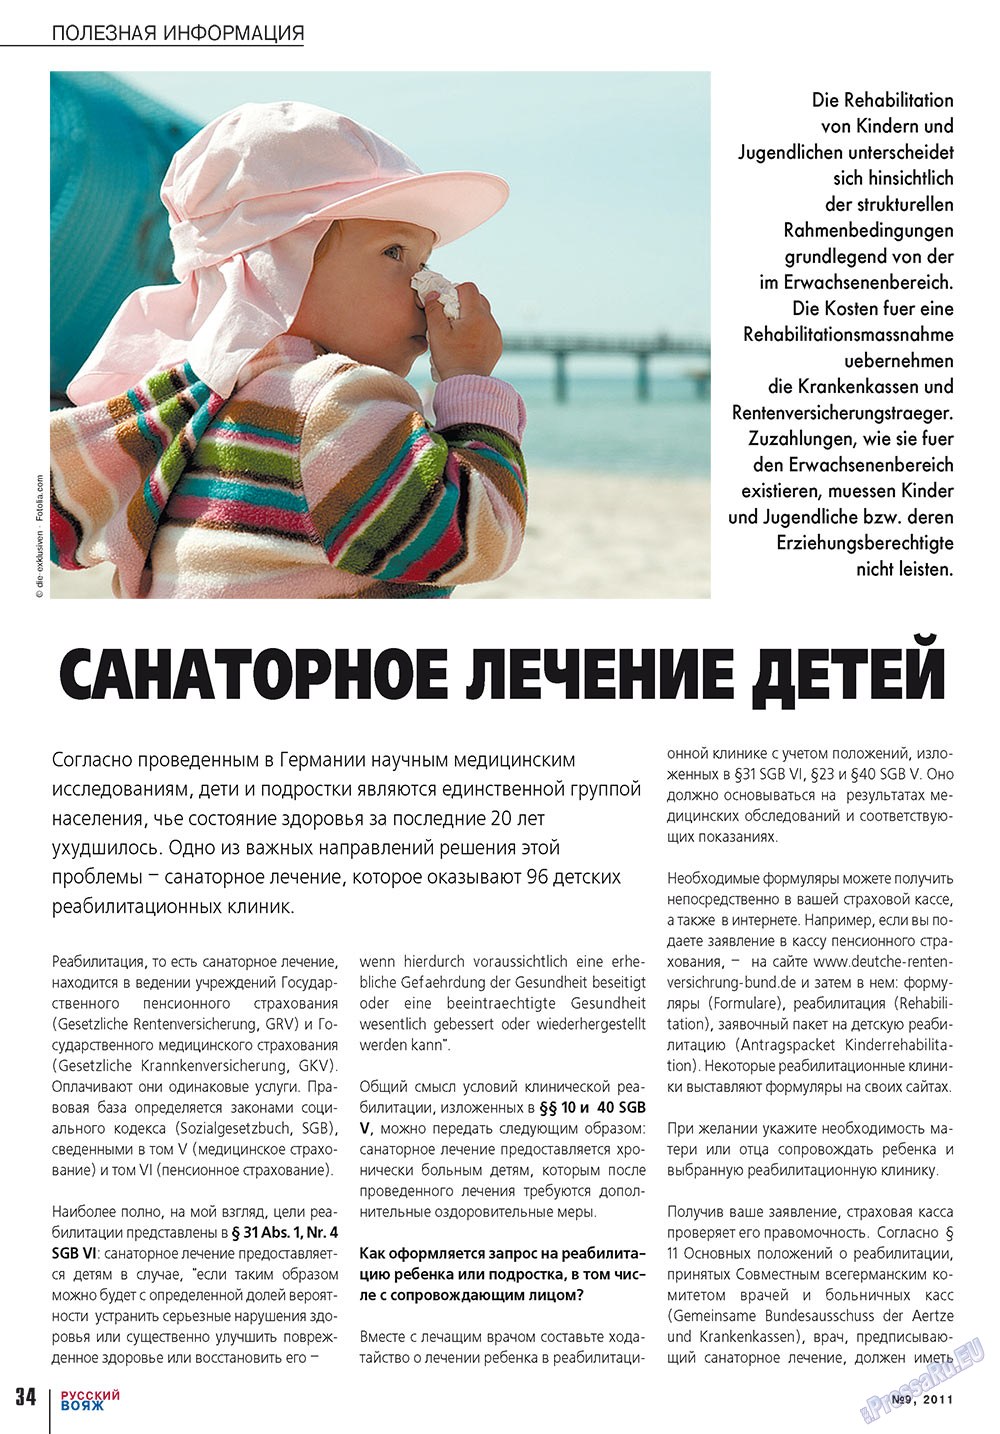 Русский вояж (журнал). 2011 год, номер 9, стр. 34